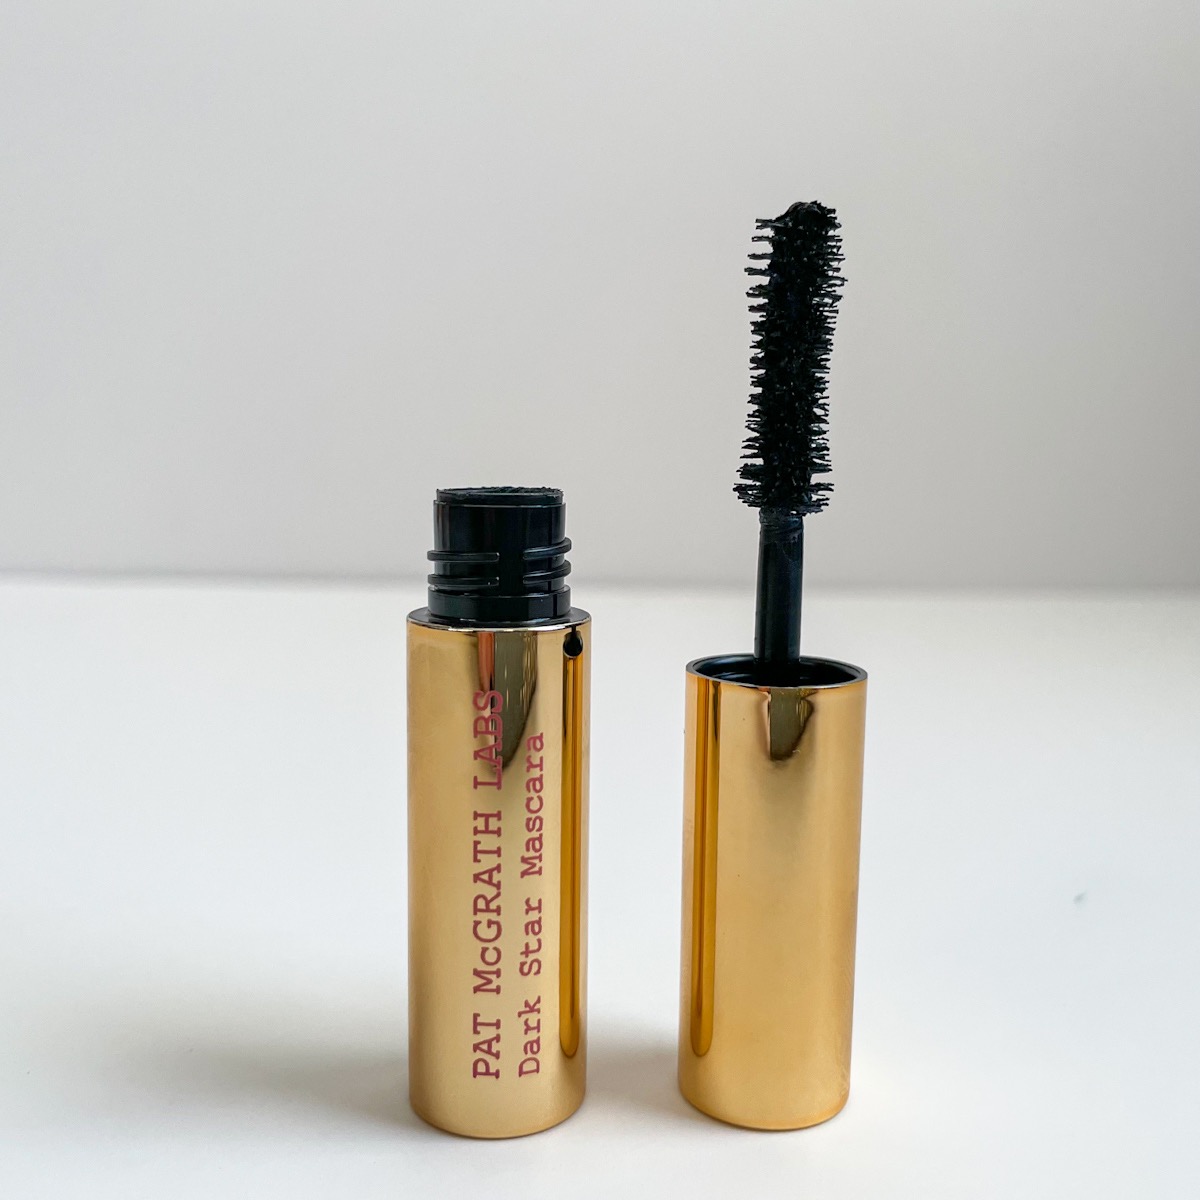 opened gold tube of mascara with fluffy mascara wand